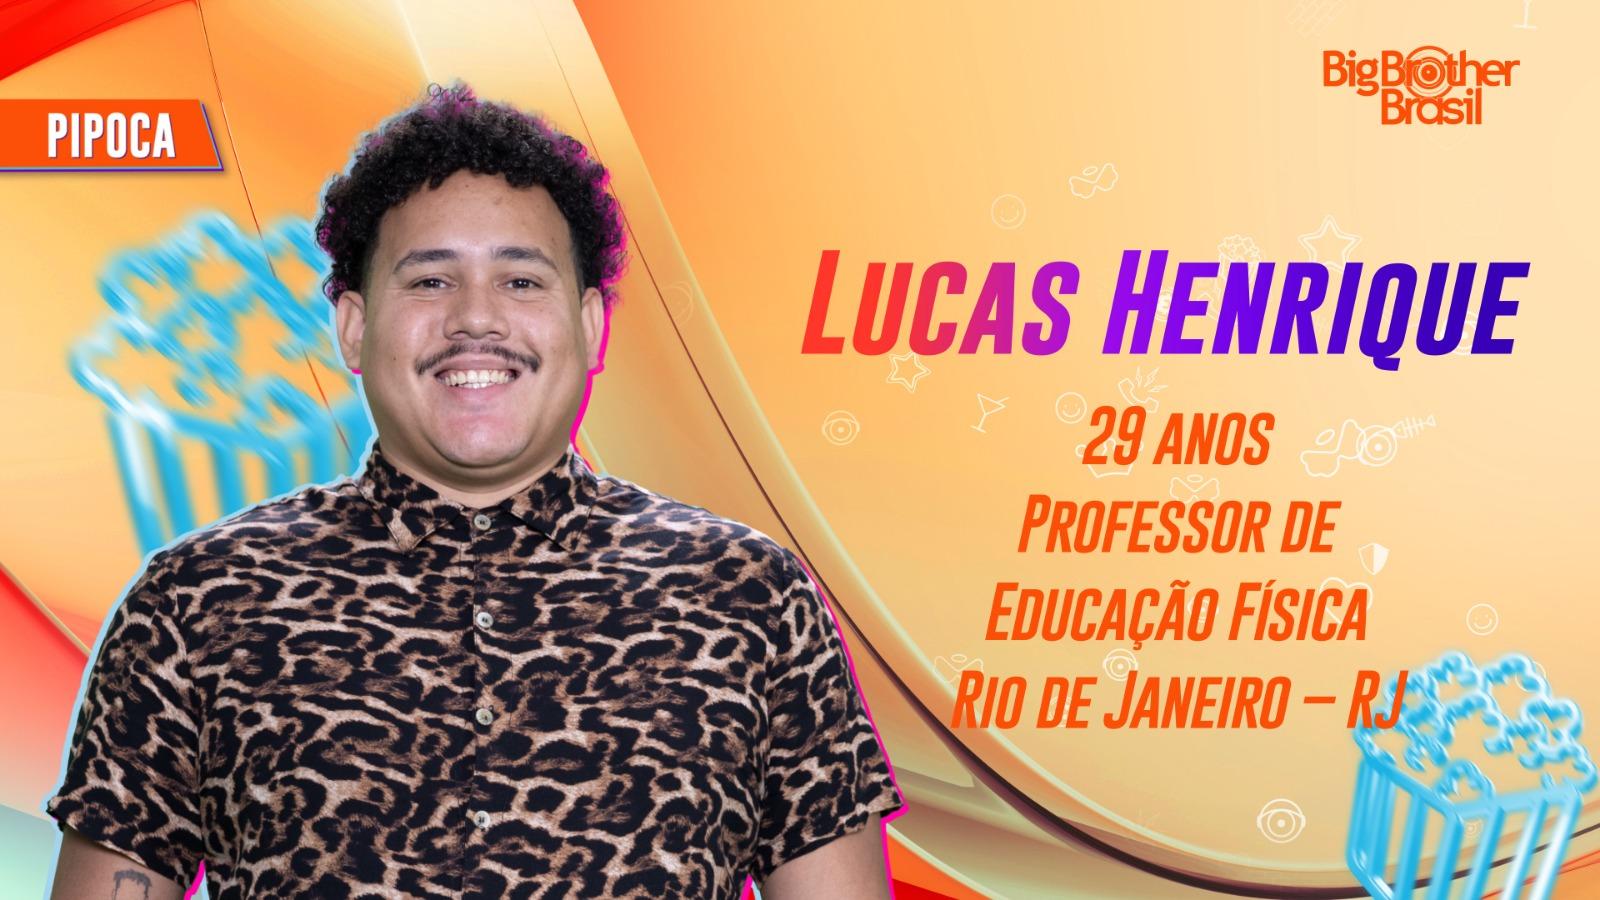 Lucas Henrique